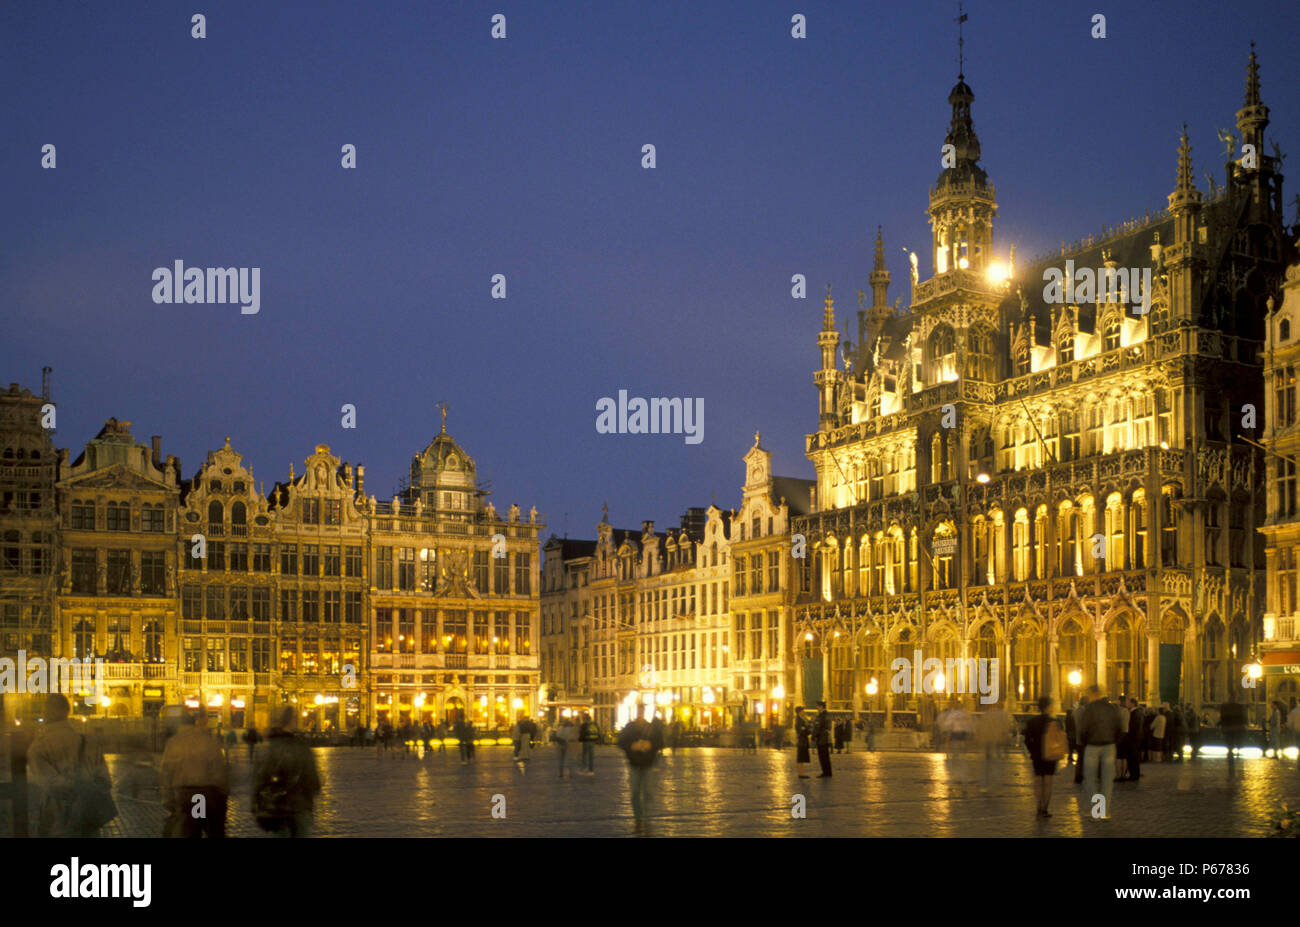 Bruxelles, Grand Place, Belgium. Stock Photo